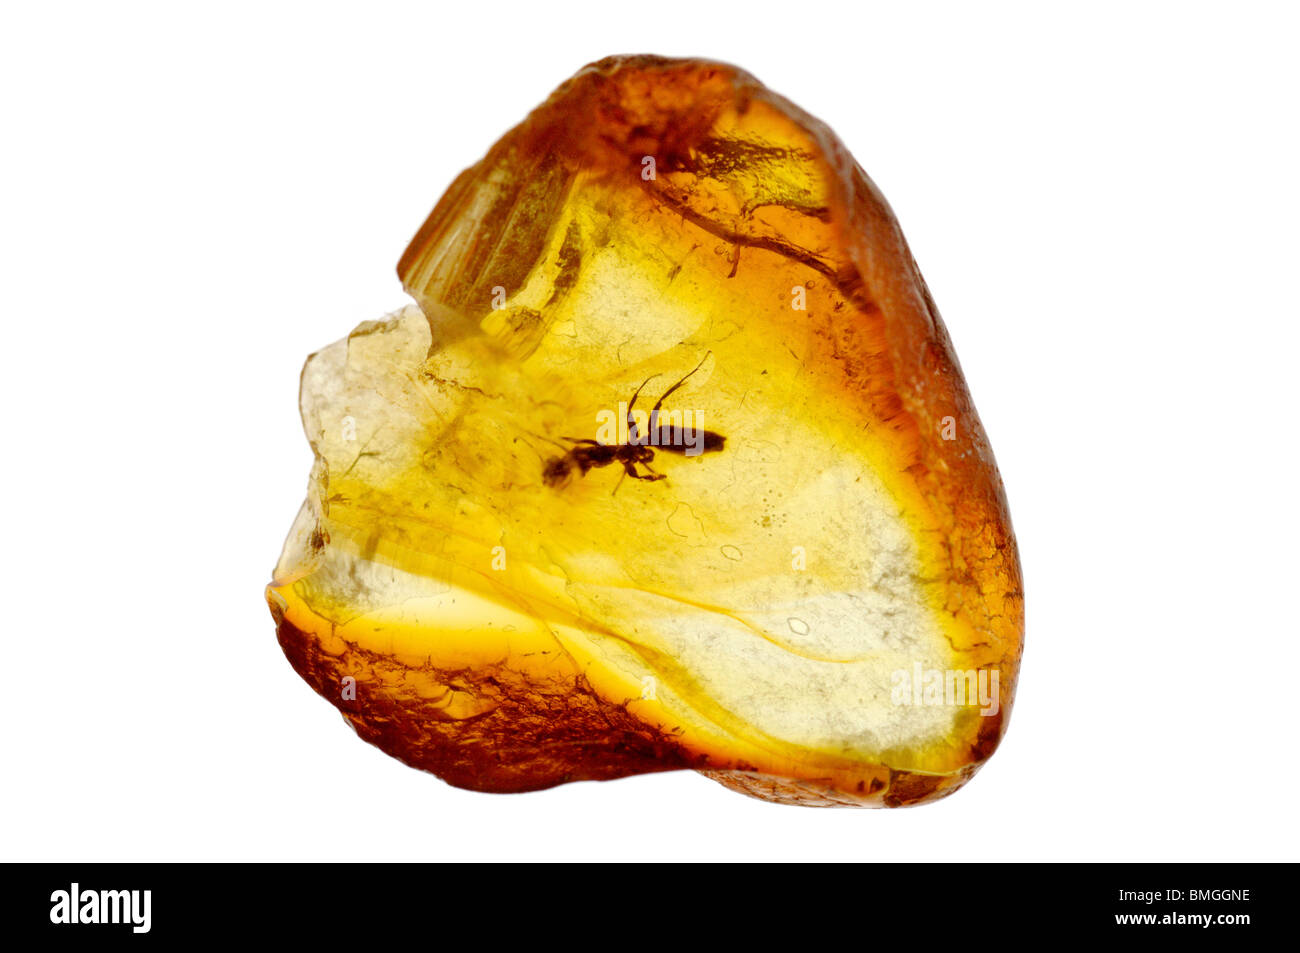 Un insecte dans l'ambre baltique - une résine d'arbres fossilisés. Banque D'Images